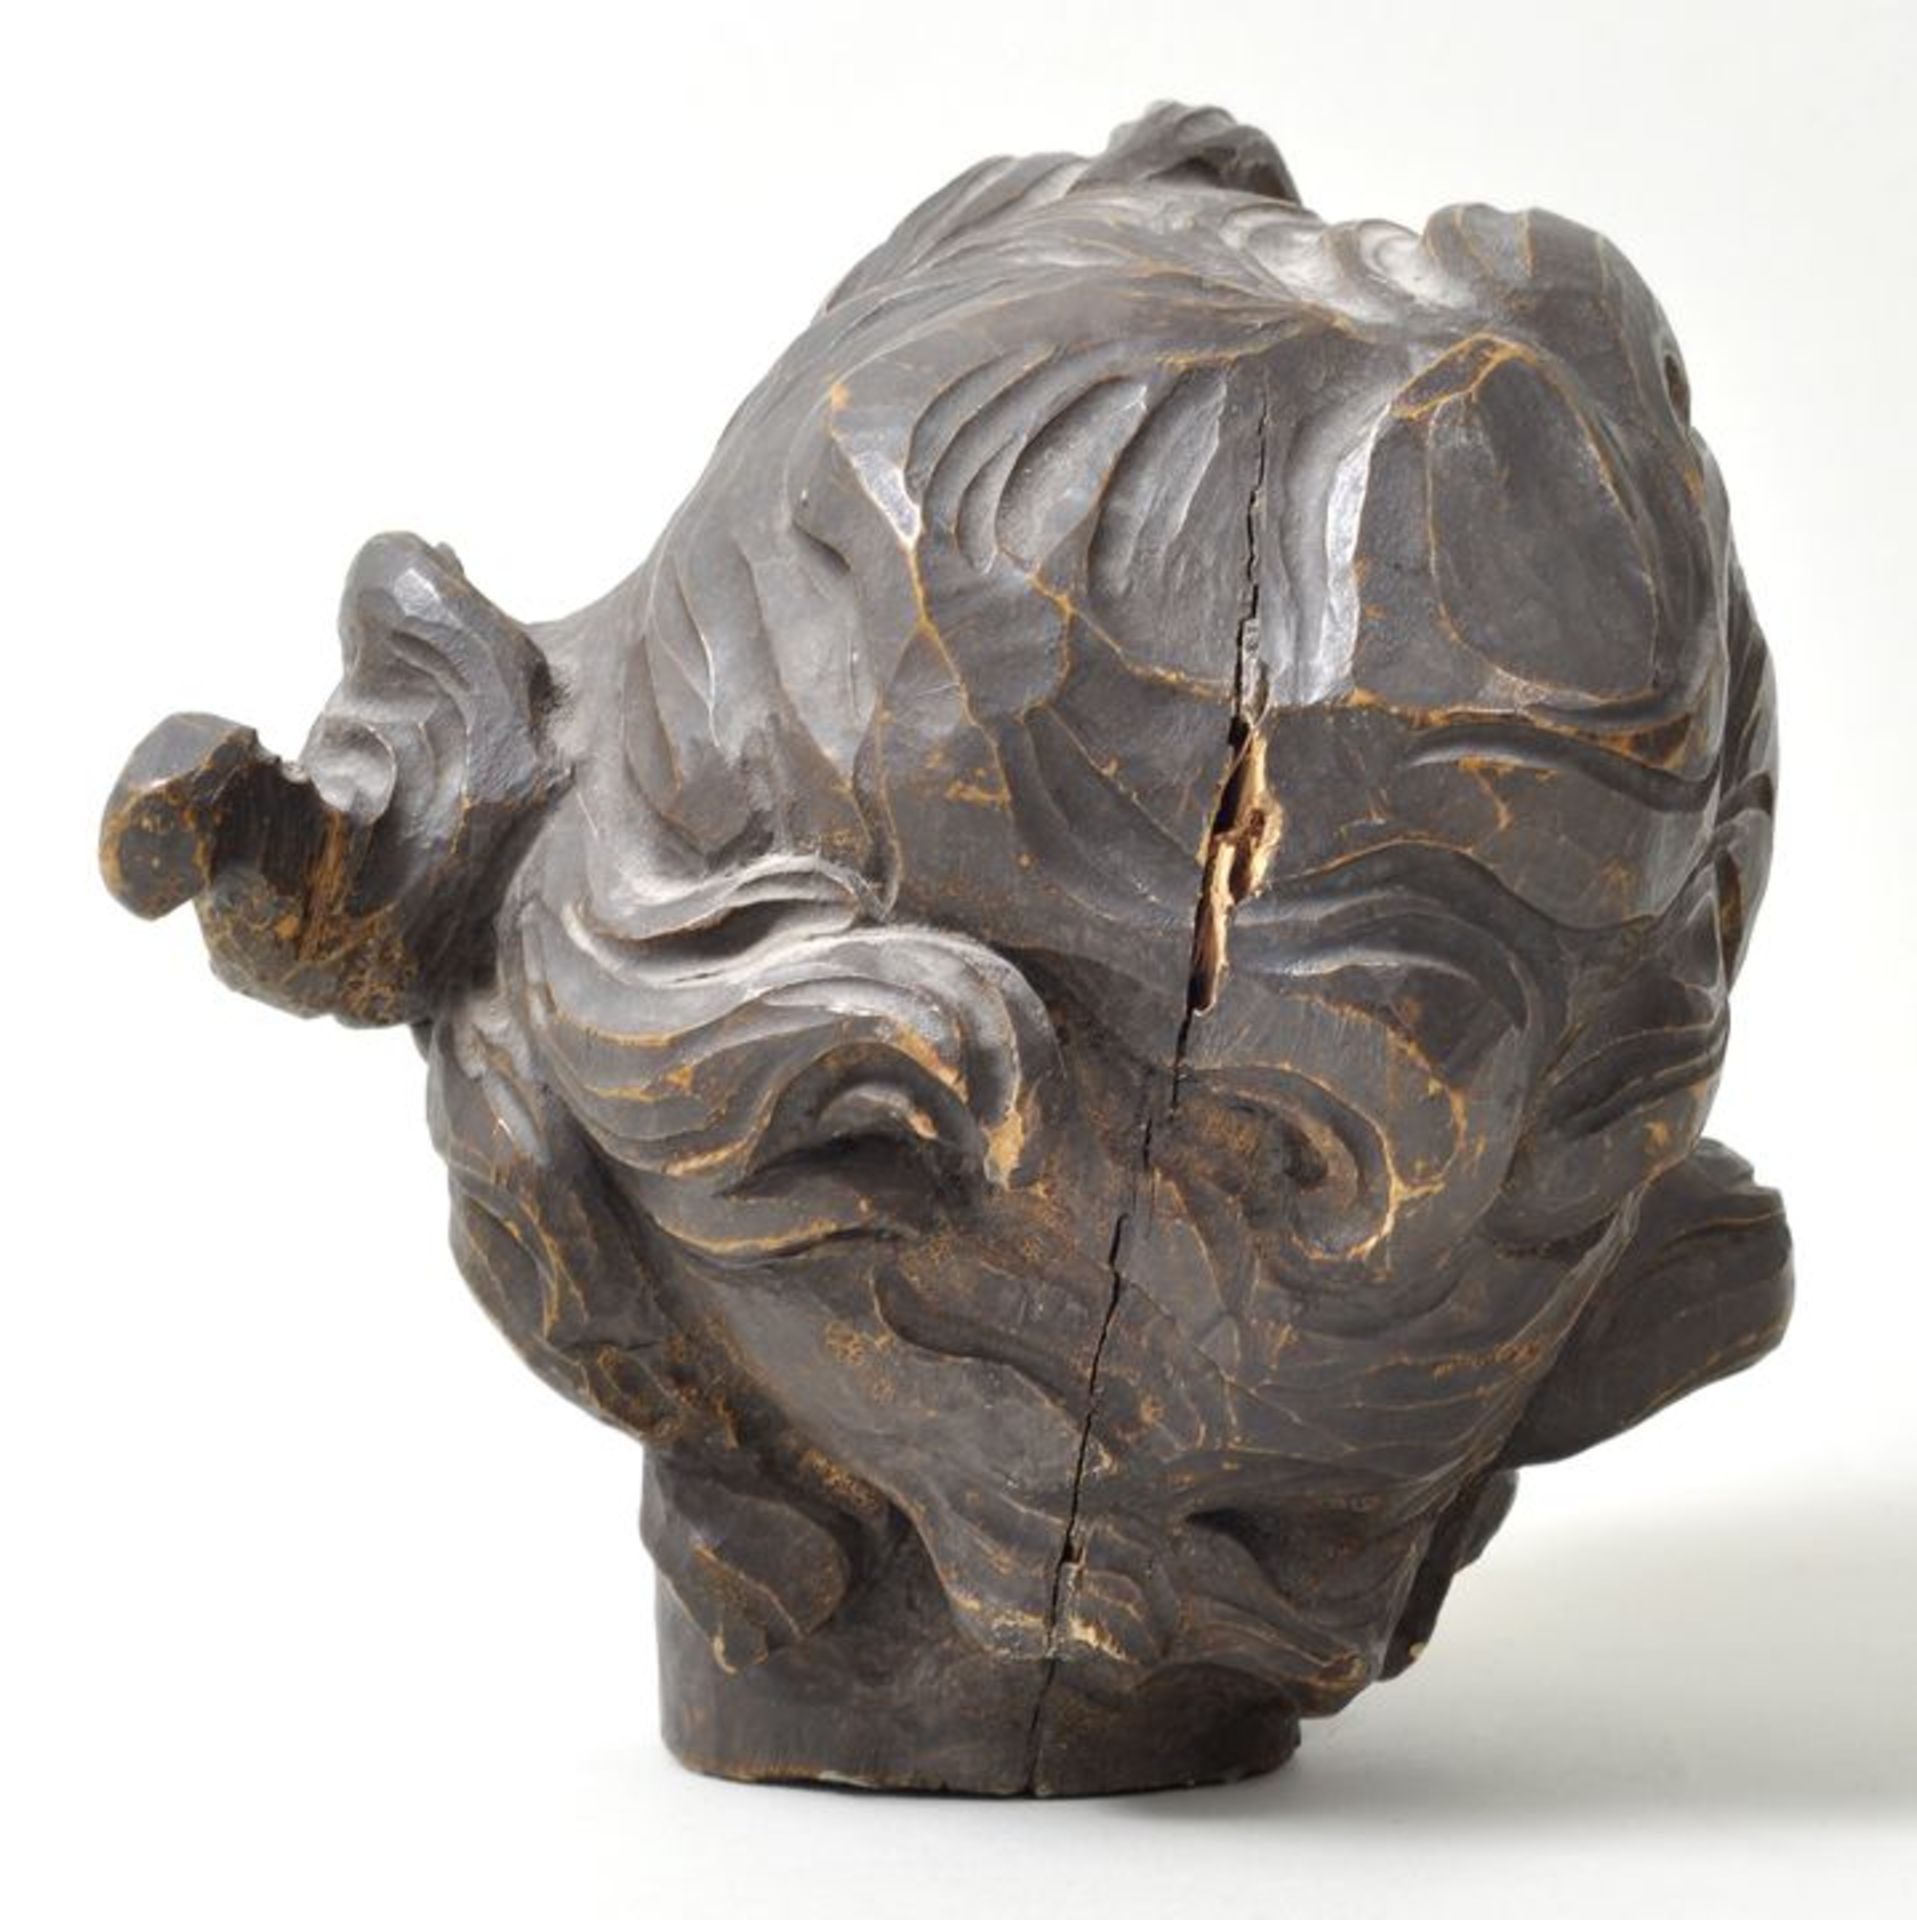 Kopf eines Putto, BarockstilHolz, vollpllastisch geschnitzt, braun gefasst. Rückseite gerissen, - Bild 2 aus 2